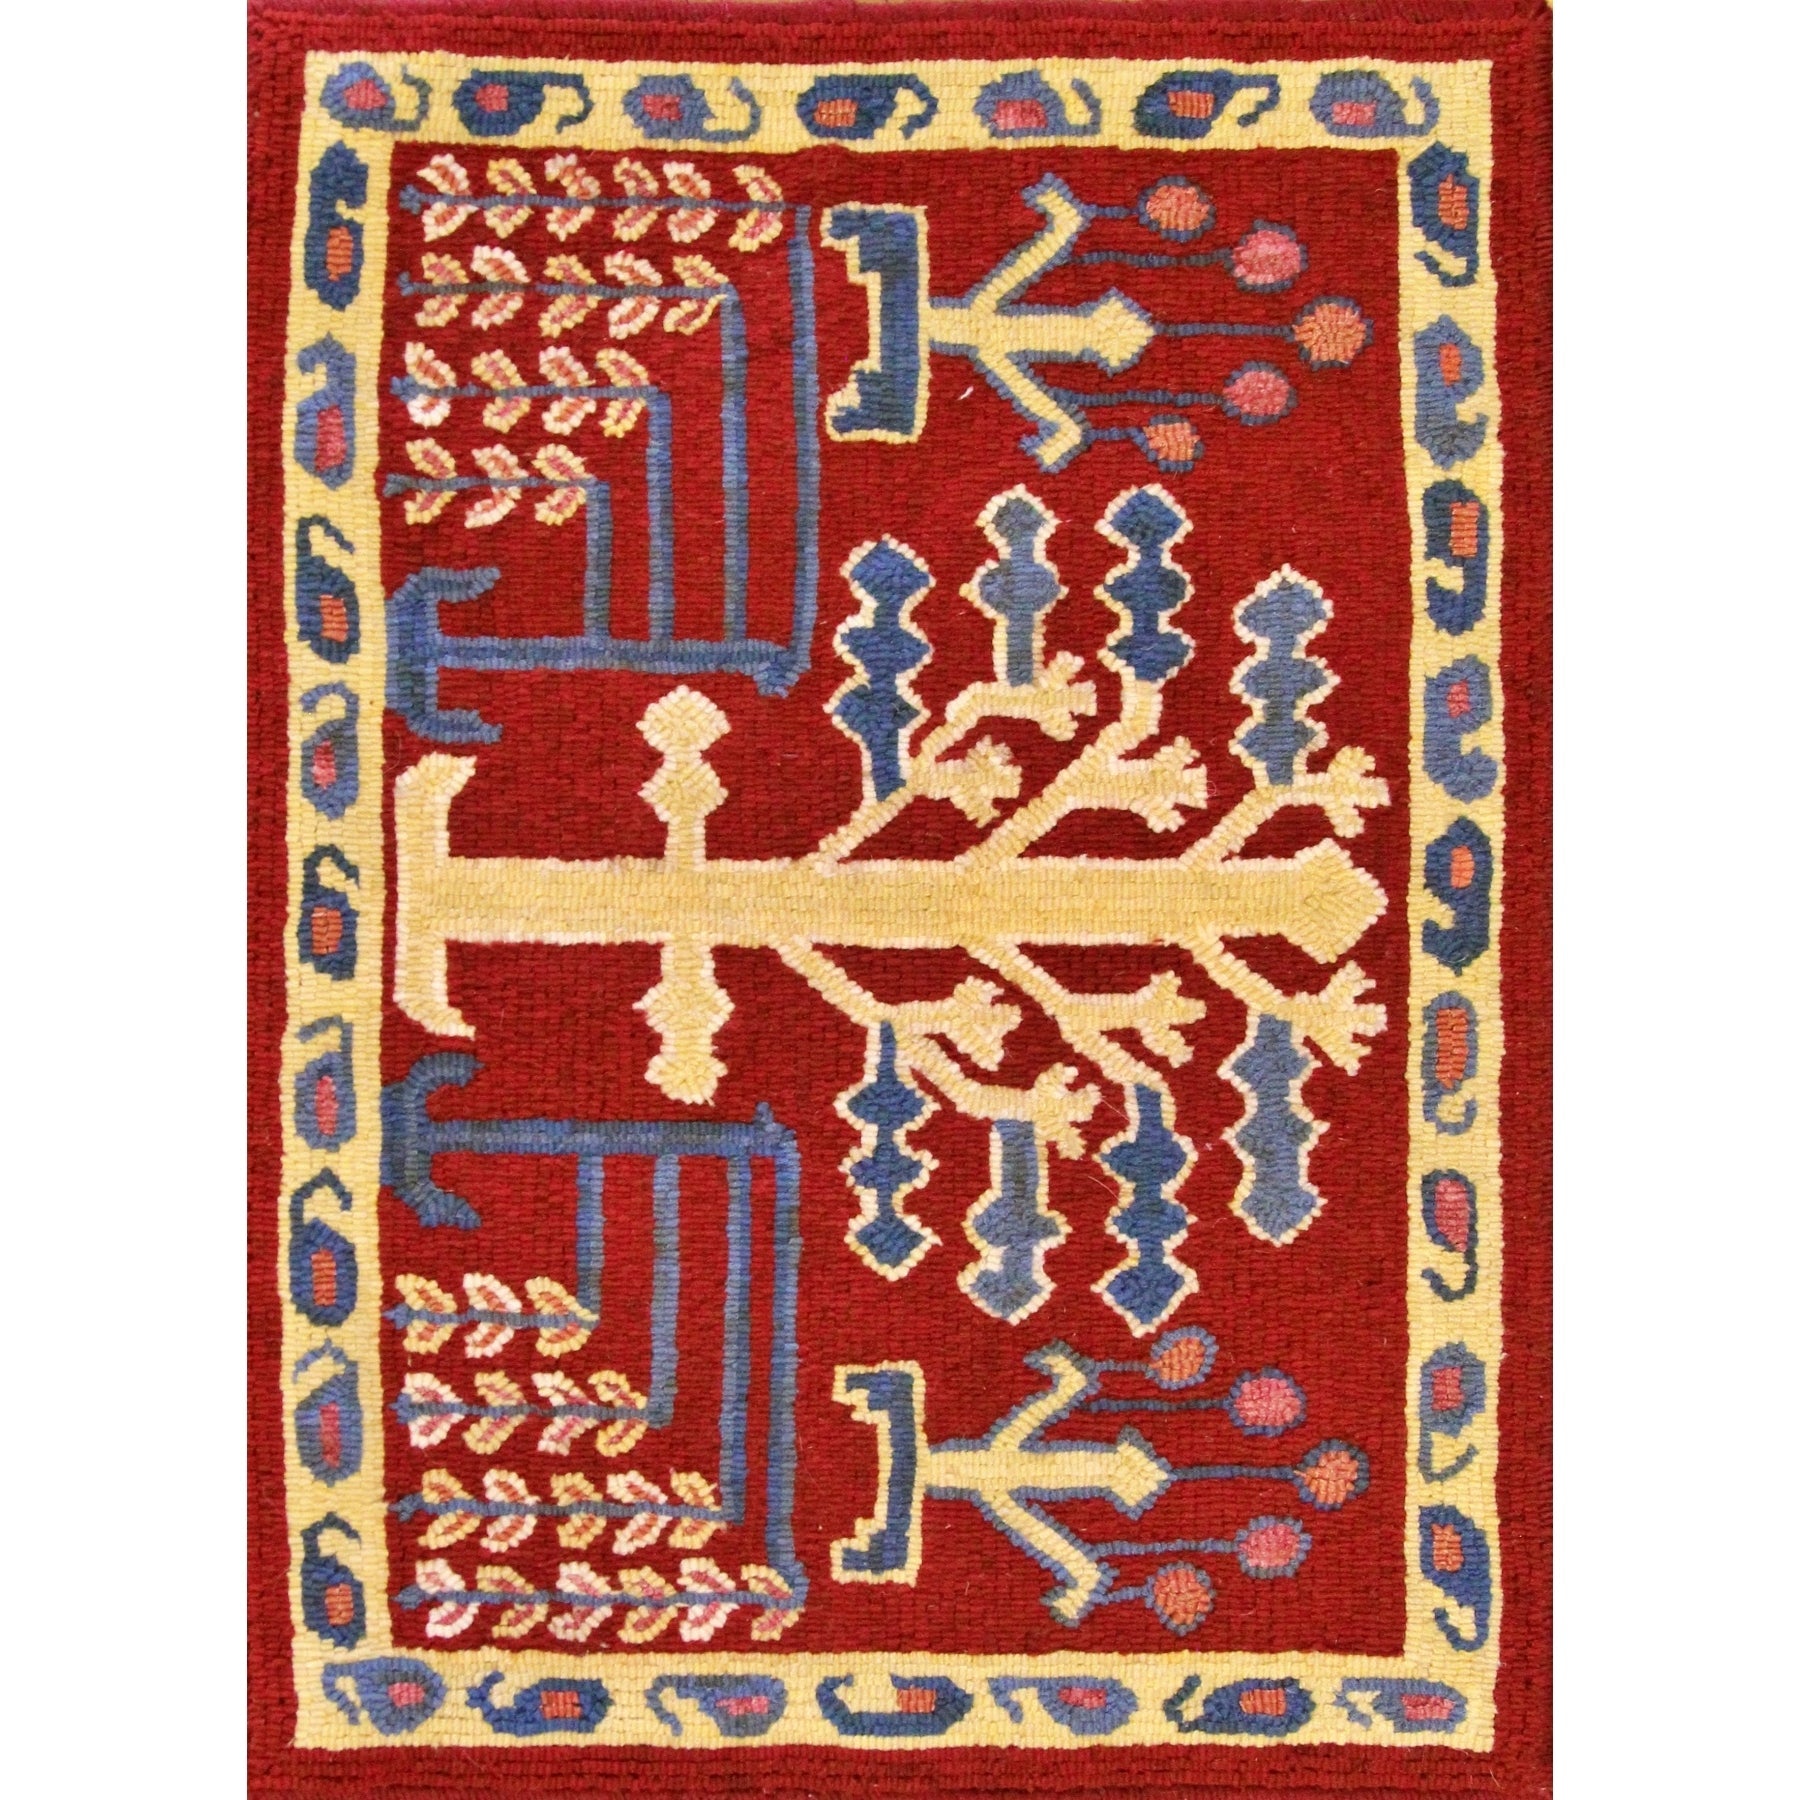 Baktyar Dozar, rug hooked by Beverly Dec